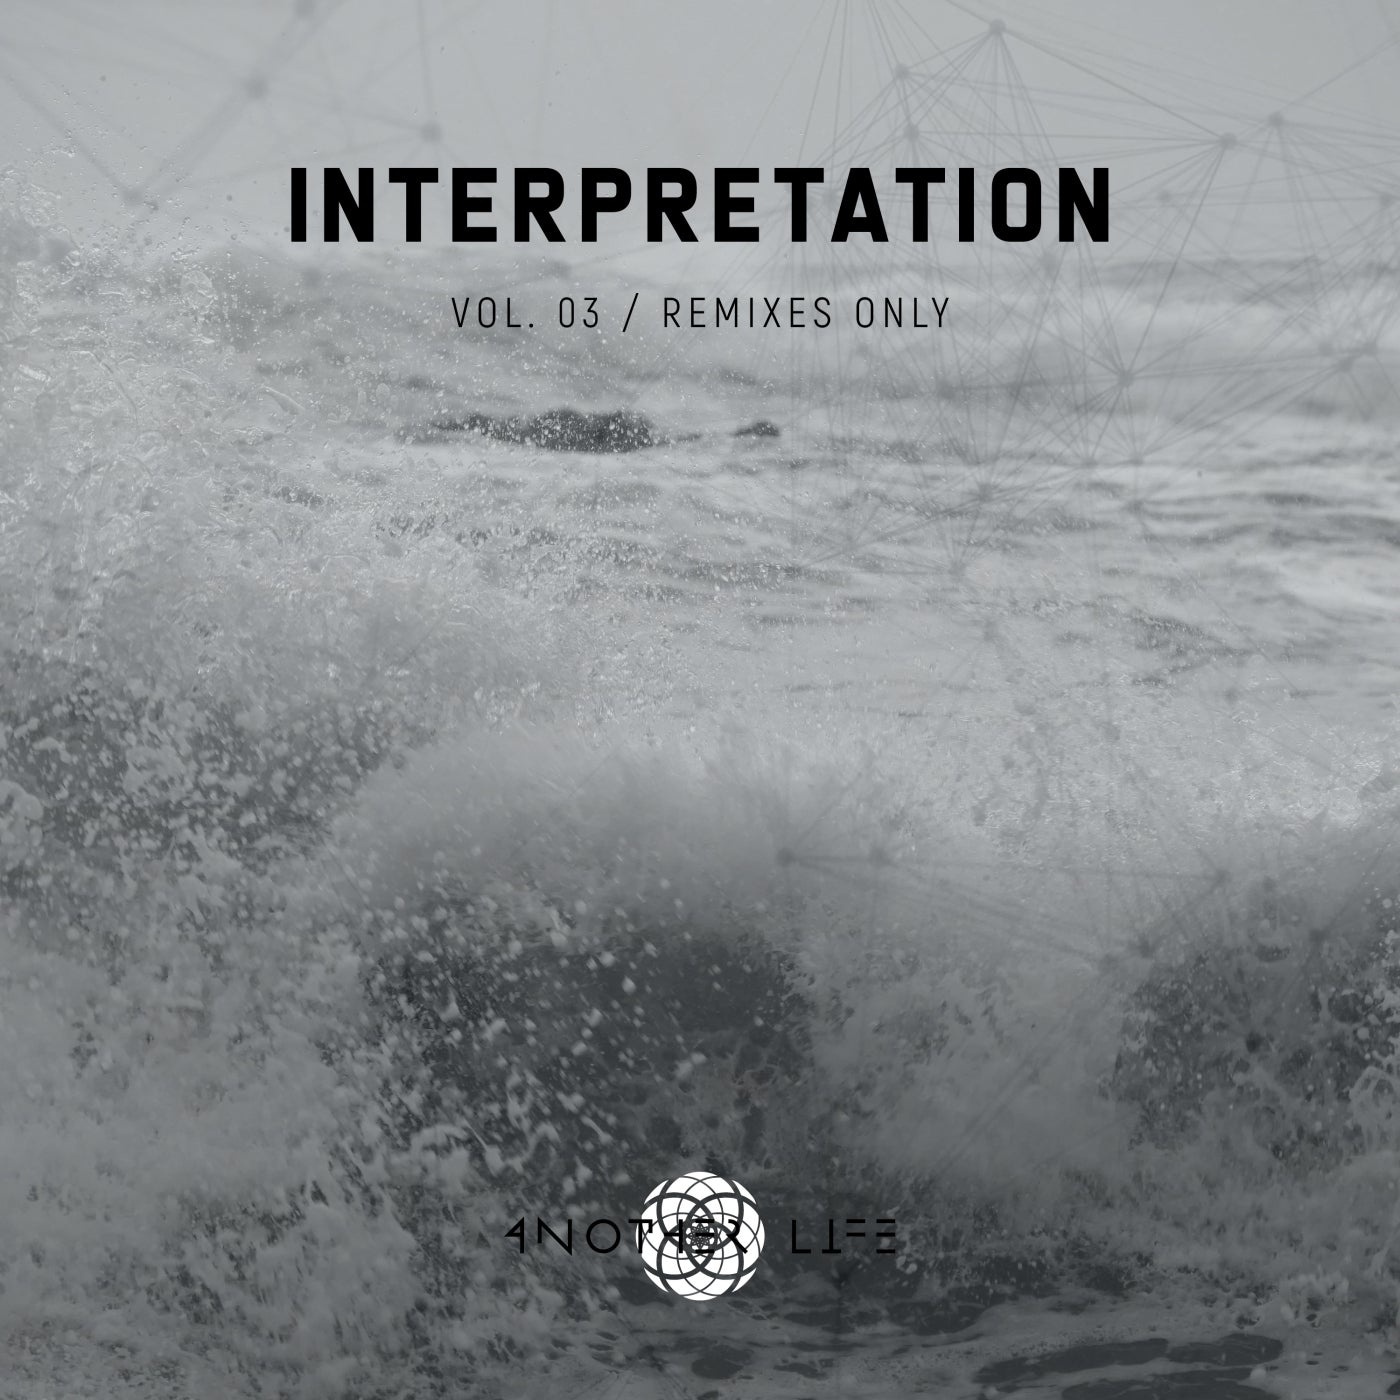 VA - Interpretation, Vol. 03 Remixes Only [ALMRMX202110]